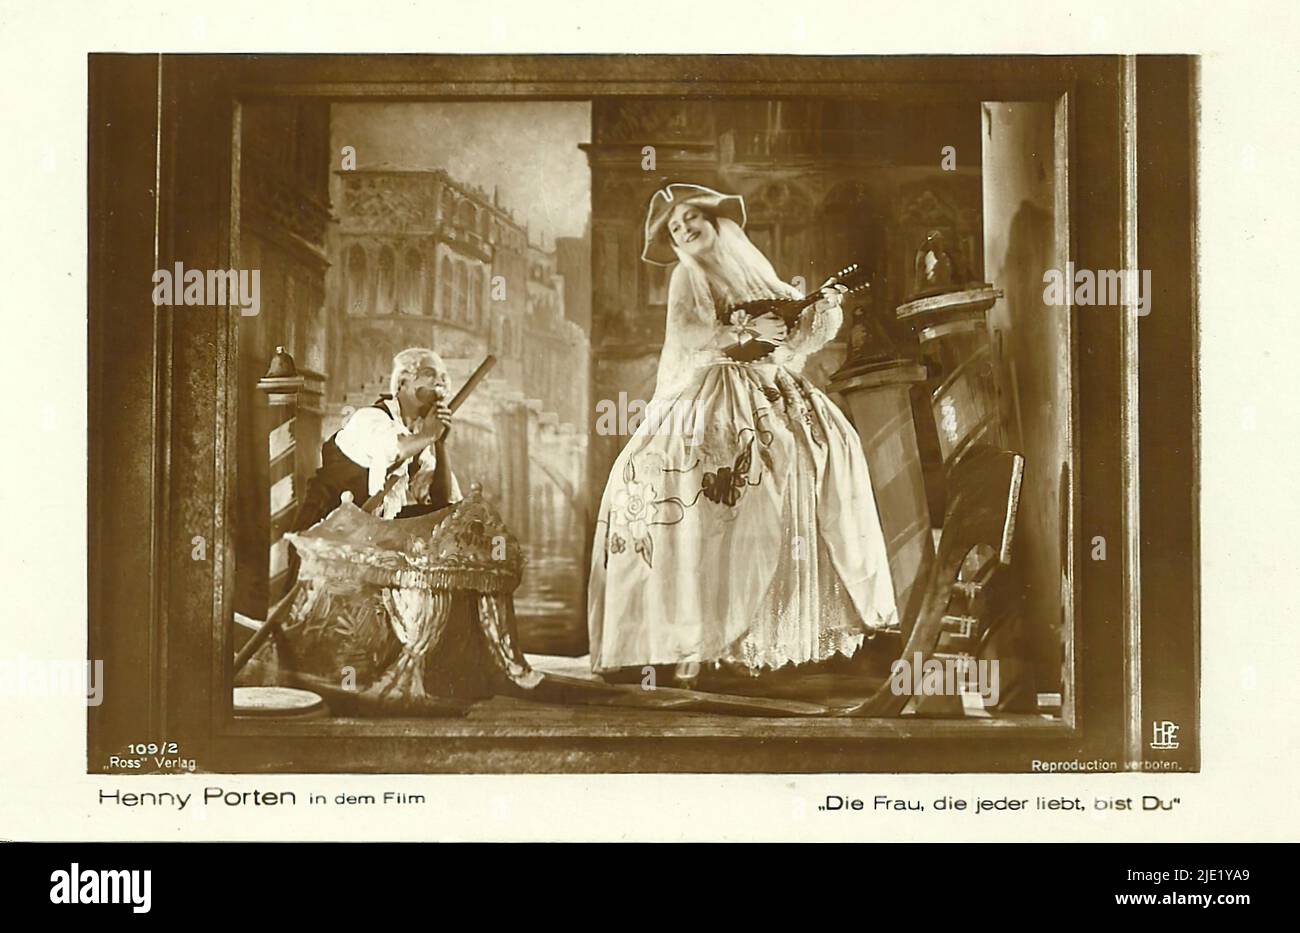 Ritratto di Henny Porten in Die Frau, die jeder liebt, bist Du (1929) - cinema tedesco weimar era (1918 - 1935) Foto Stock